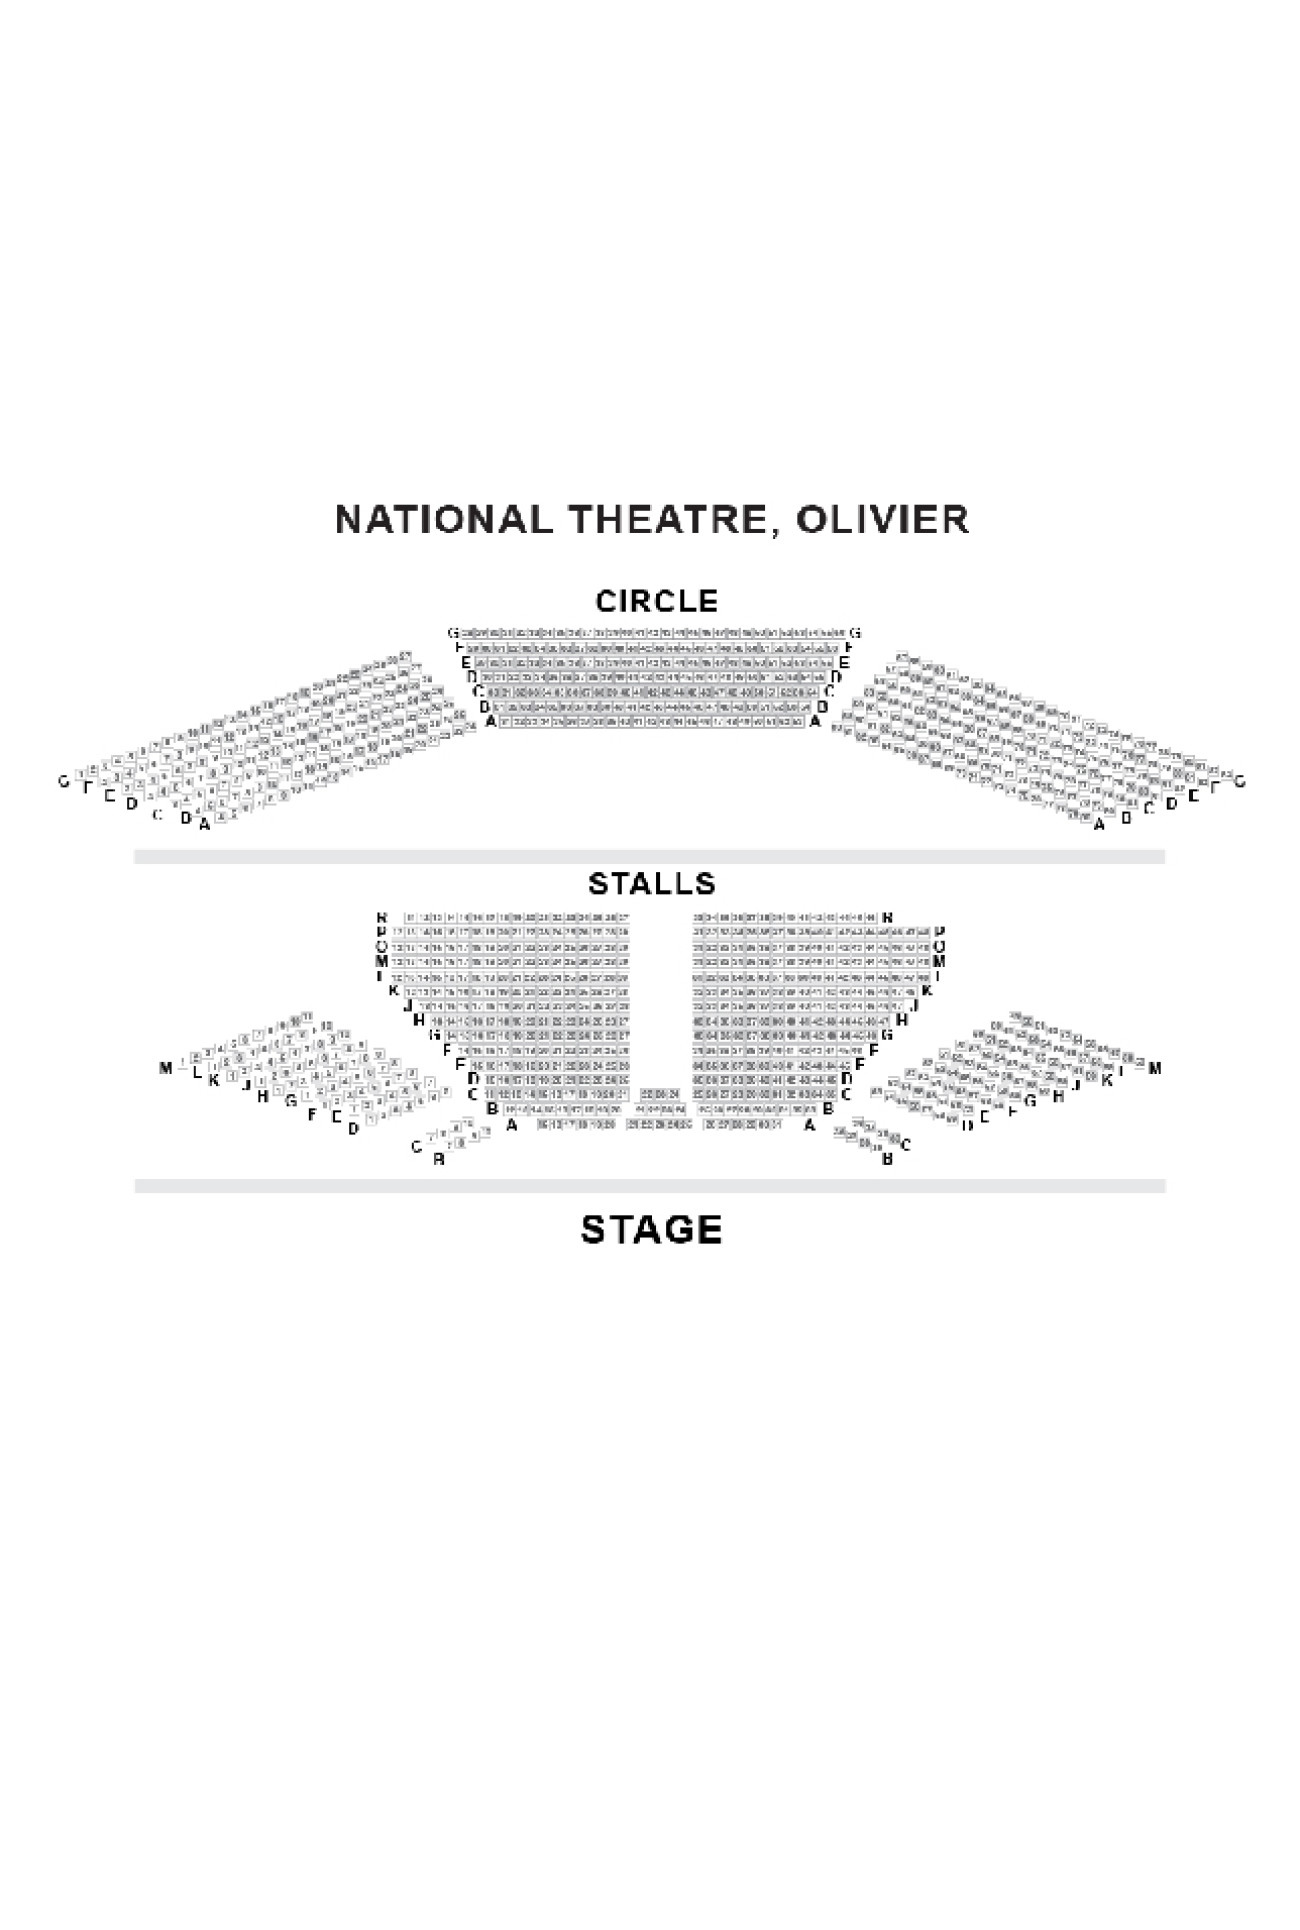 Olivier Theatre (National Theatre) Salsplan